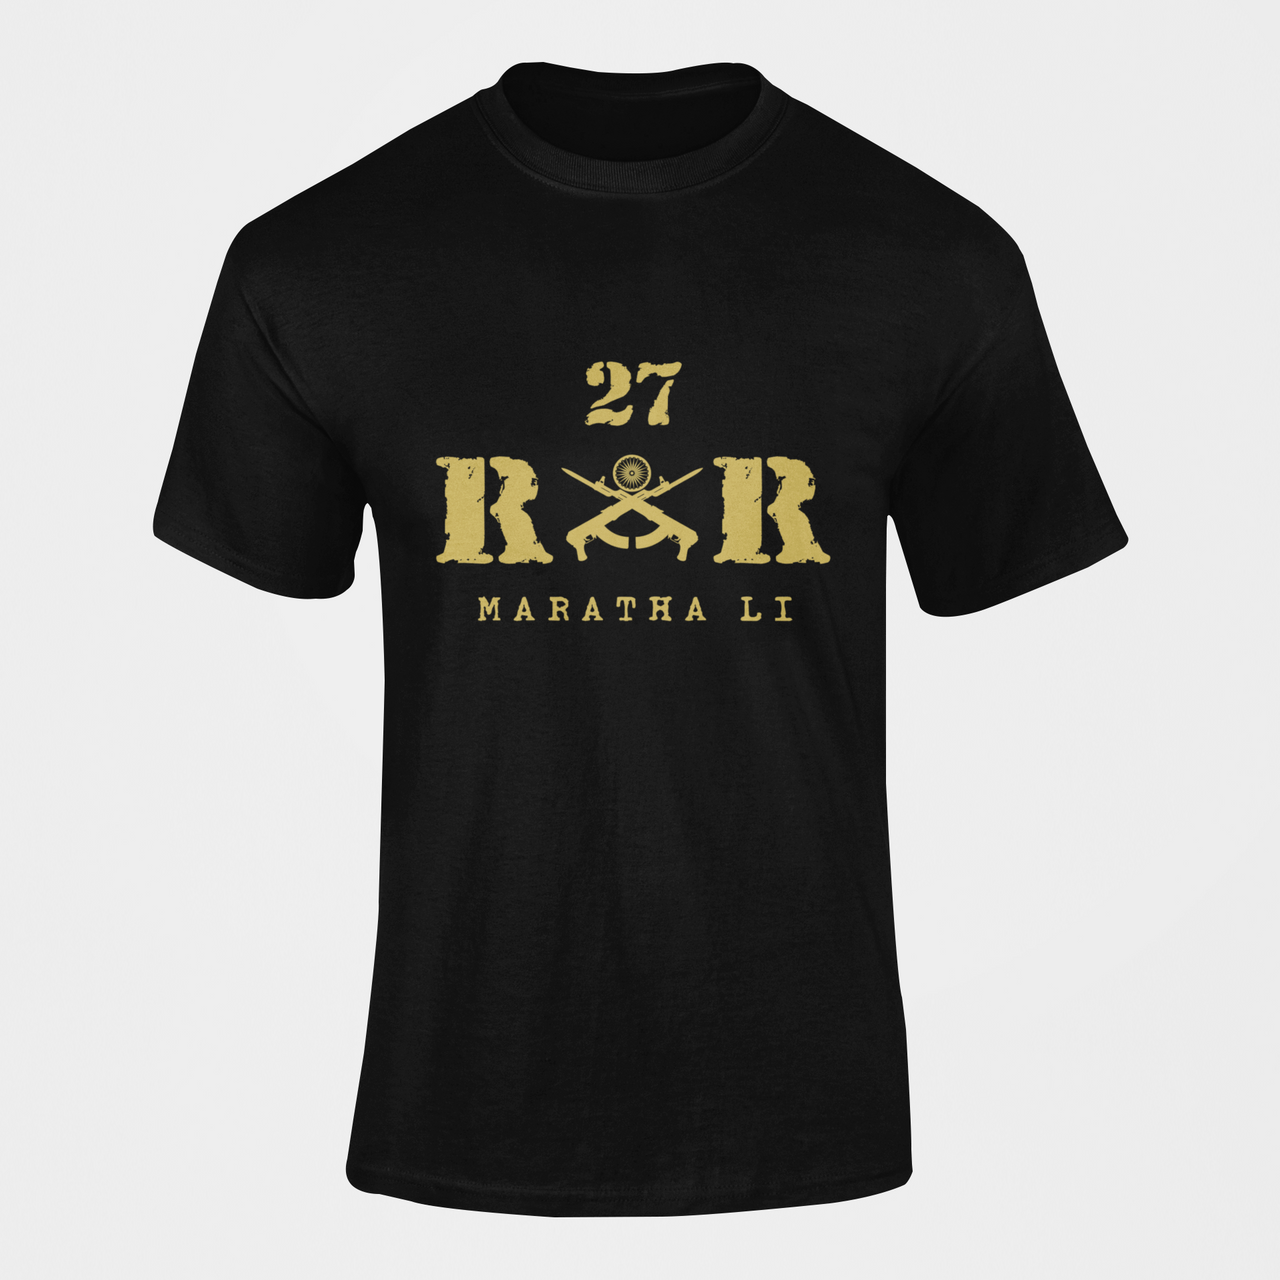 Rashtriya Rifles T-shirt - 27 RR Maratha Li (Men)